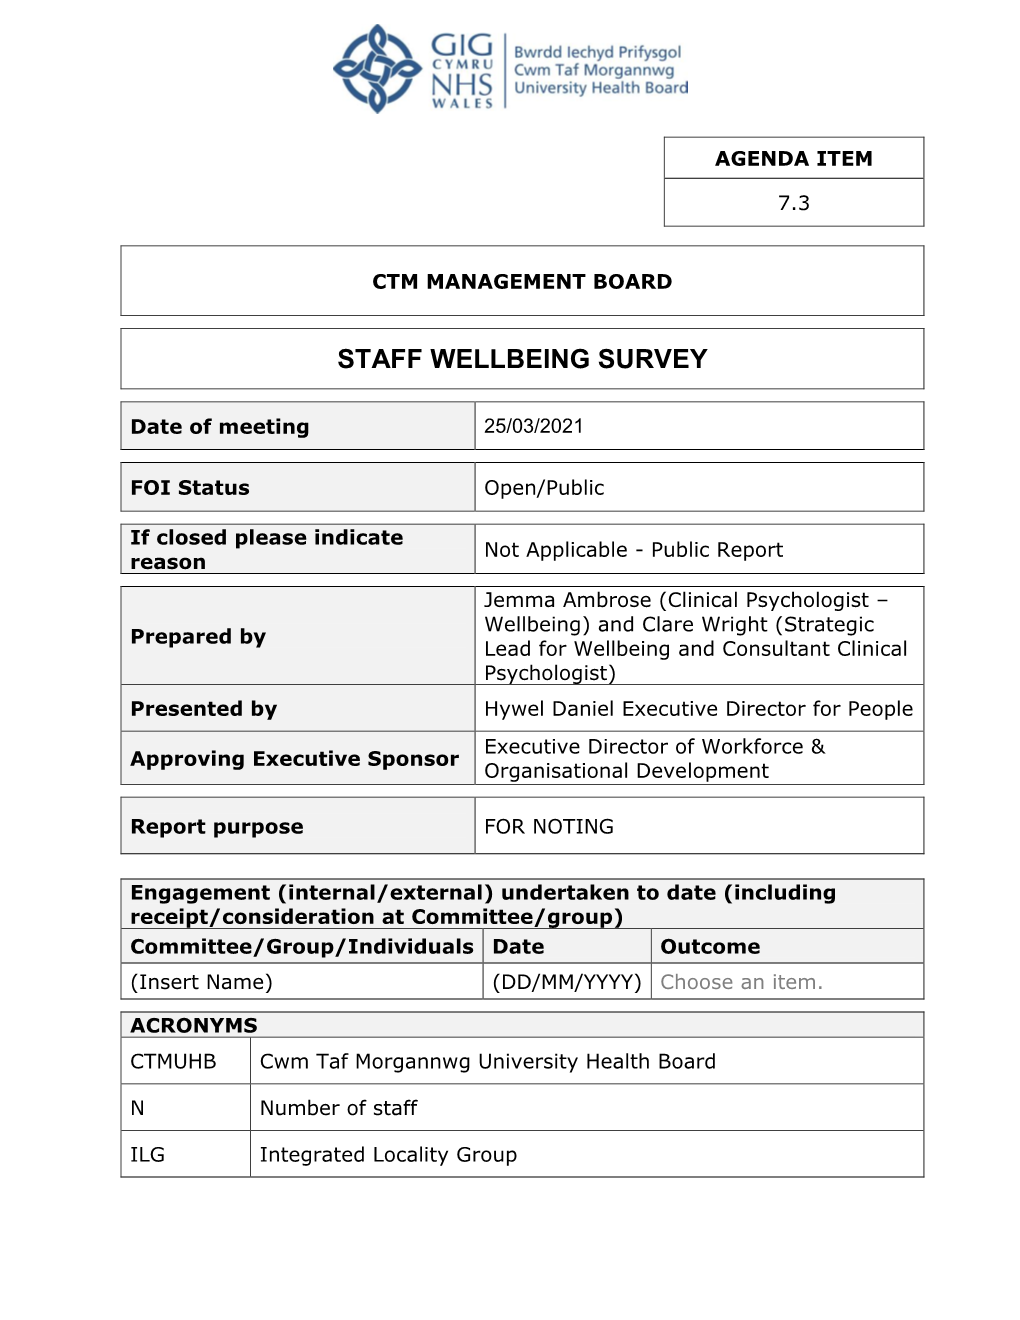 Staff Wellbeing Survey